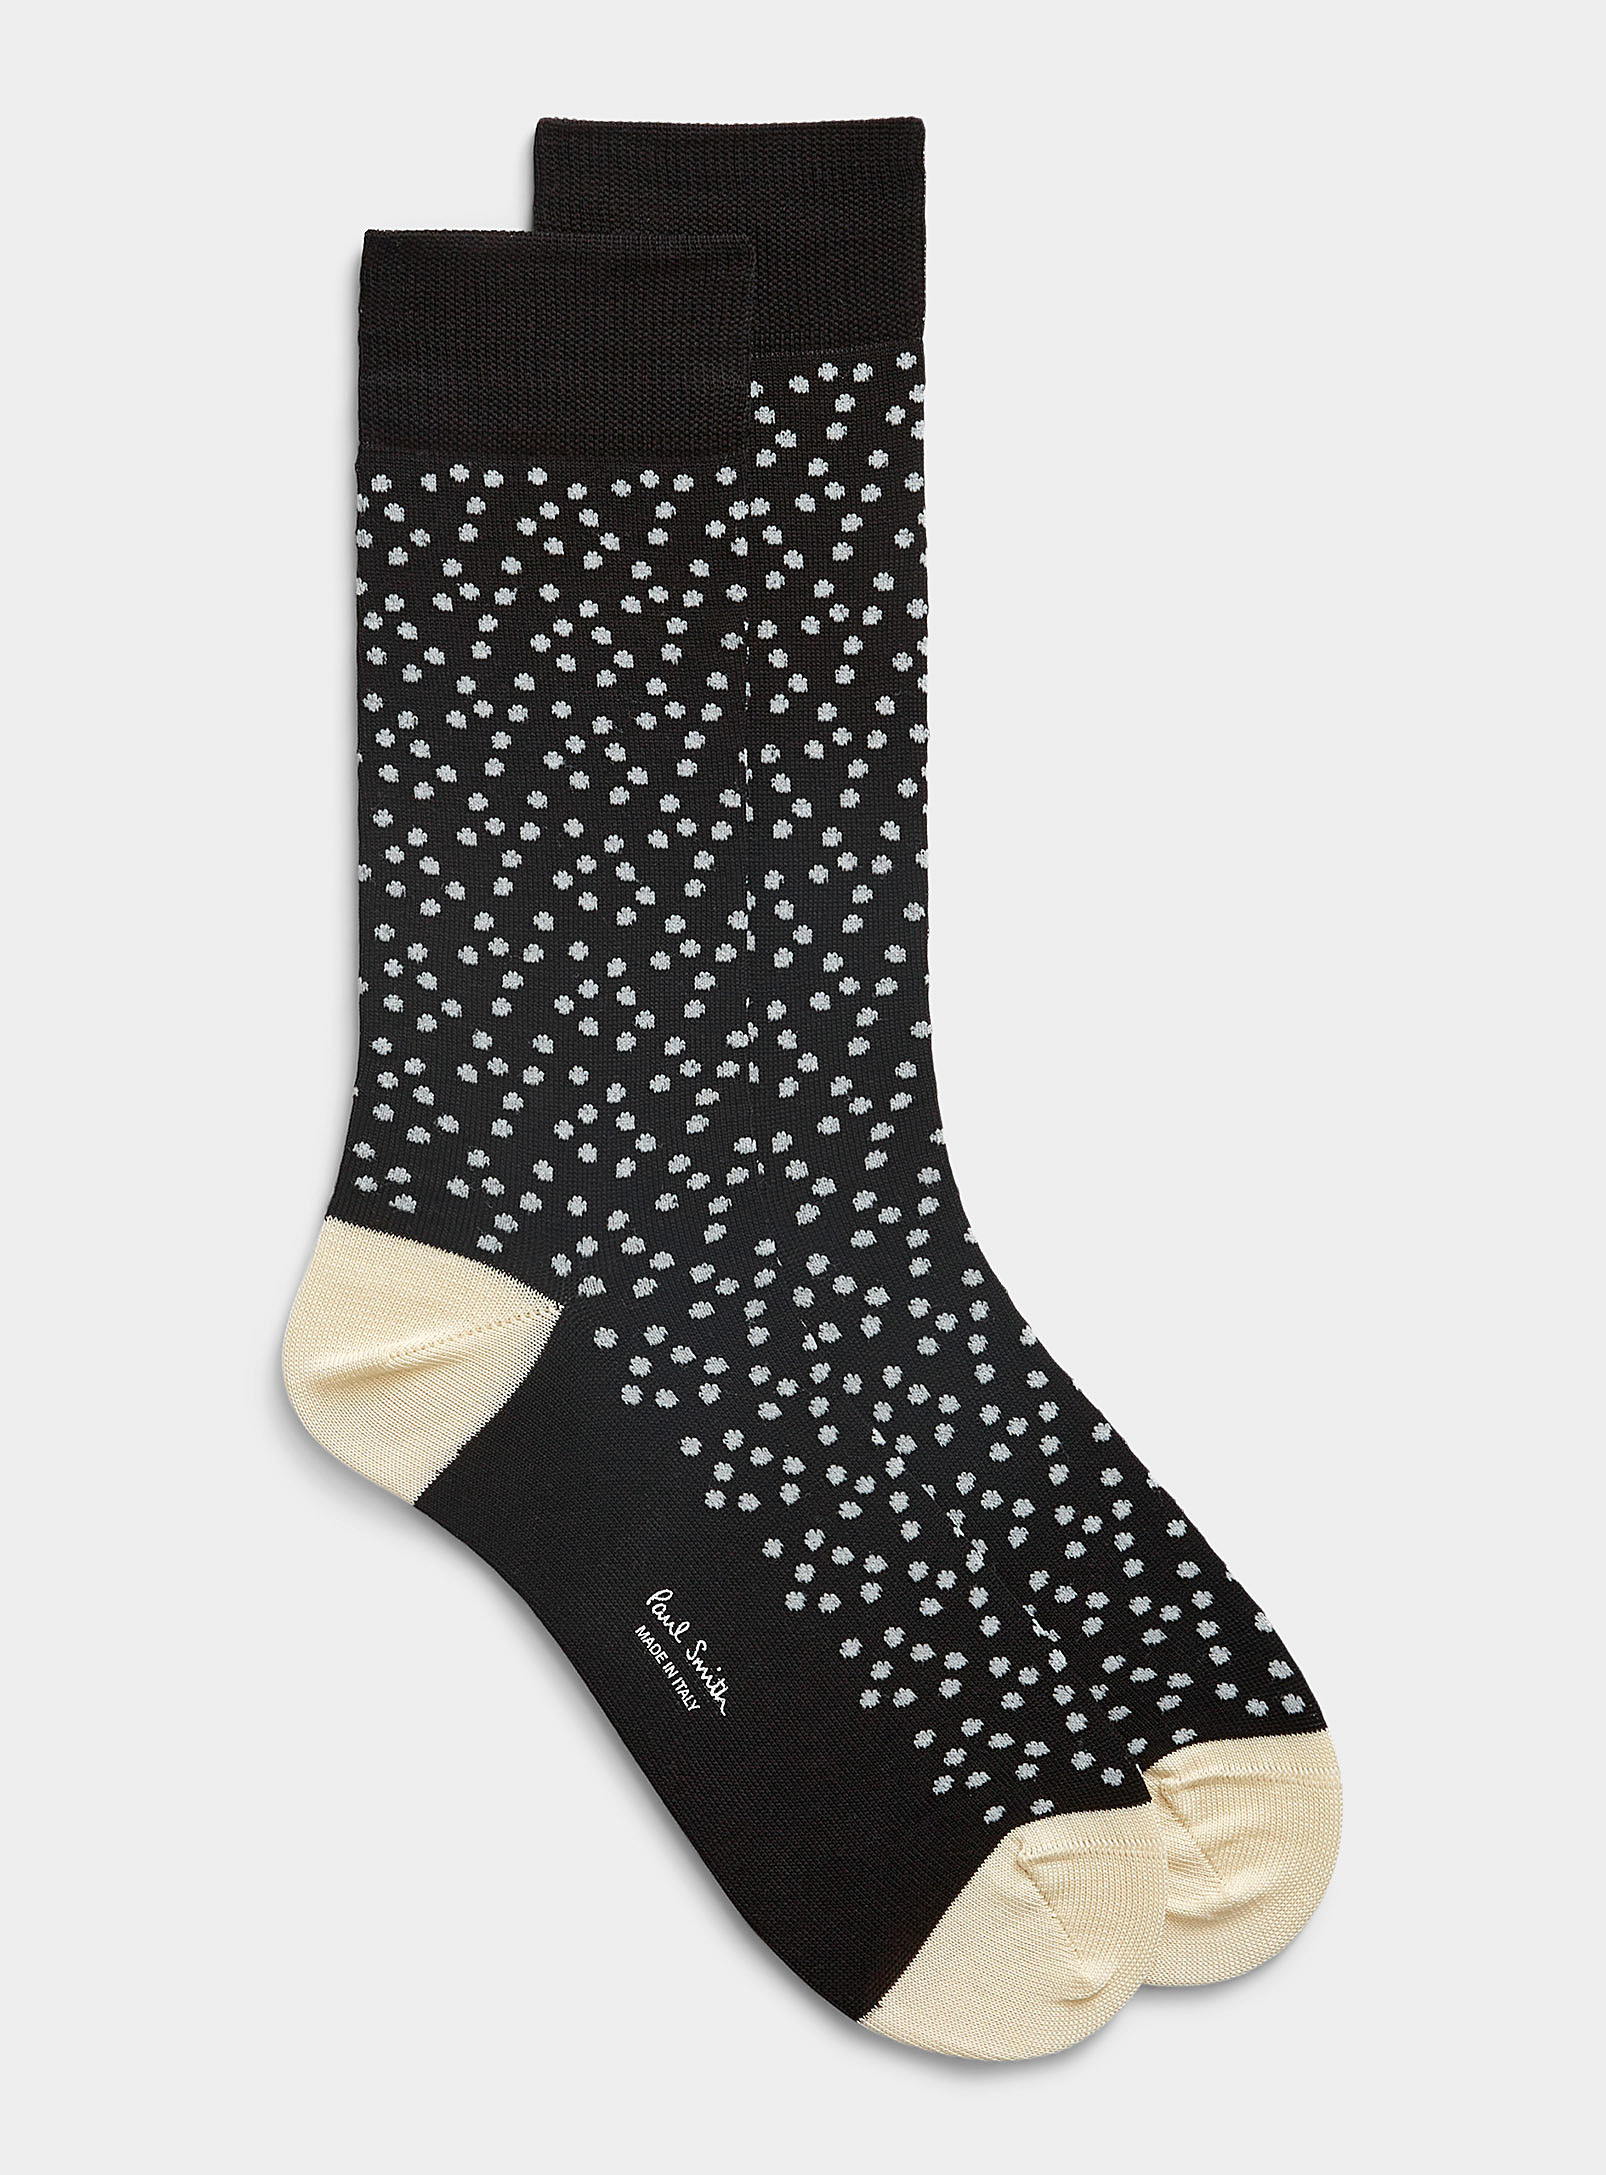 Paul Smith Artistic Dot Sock In Black